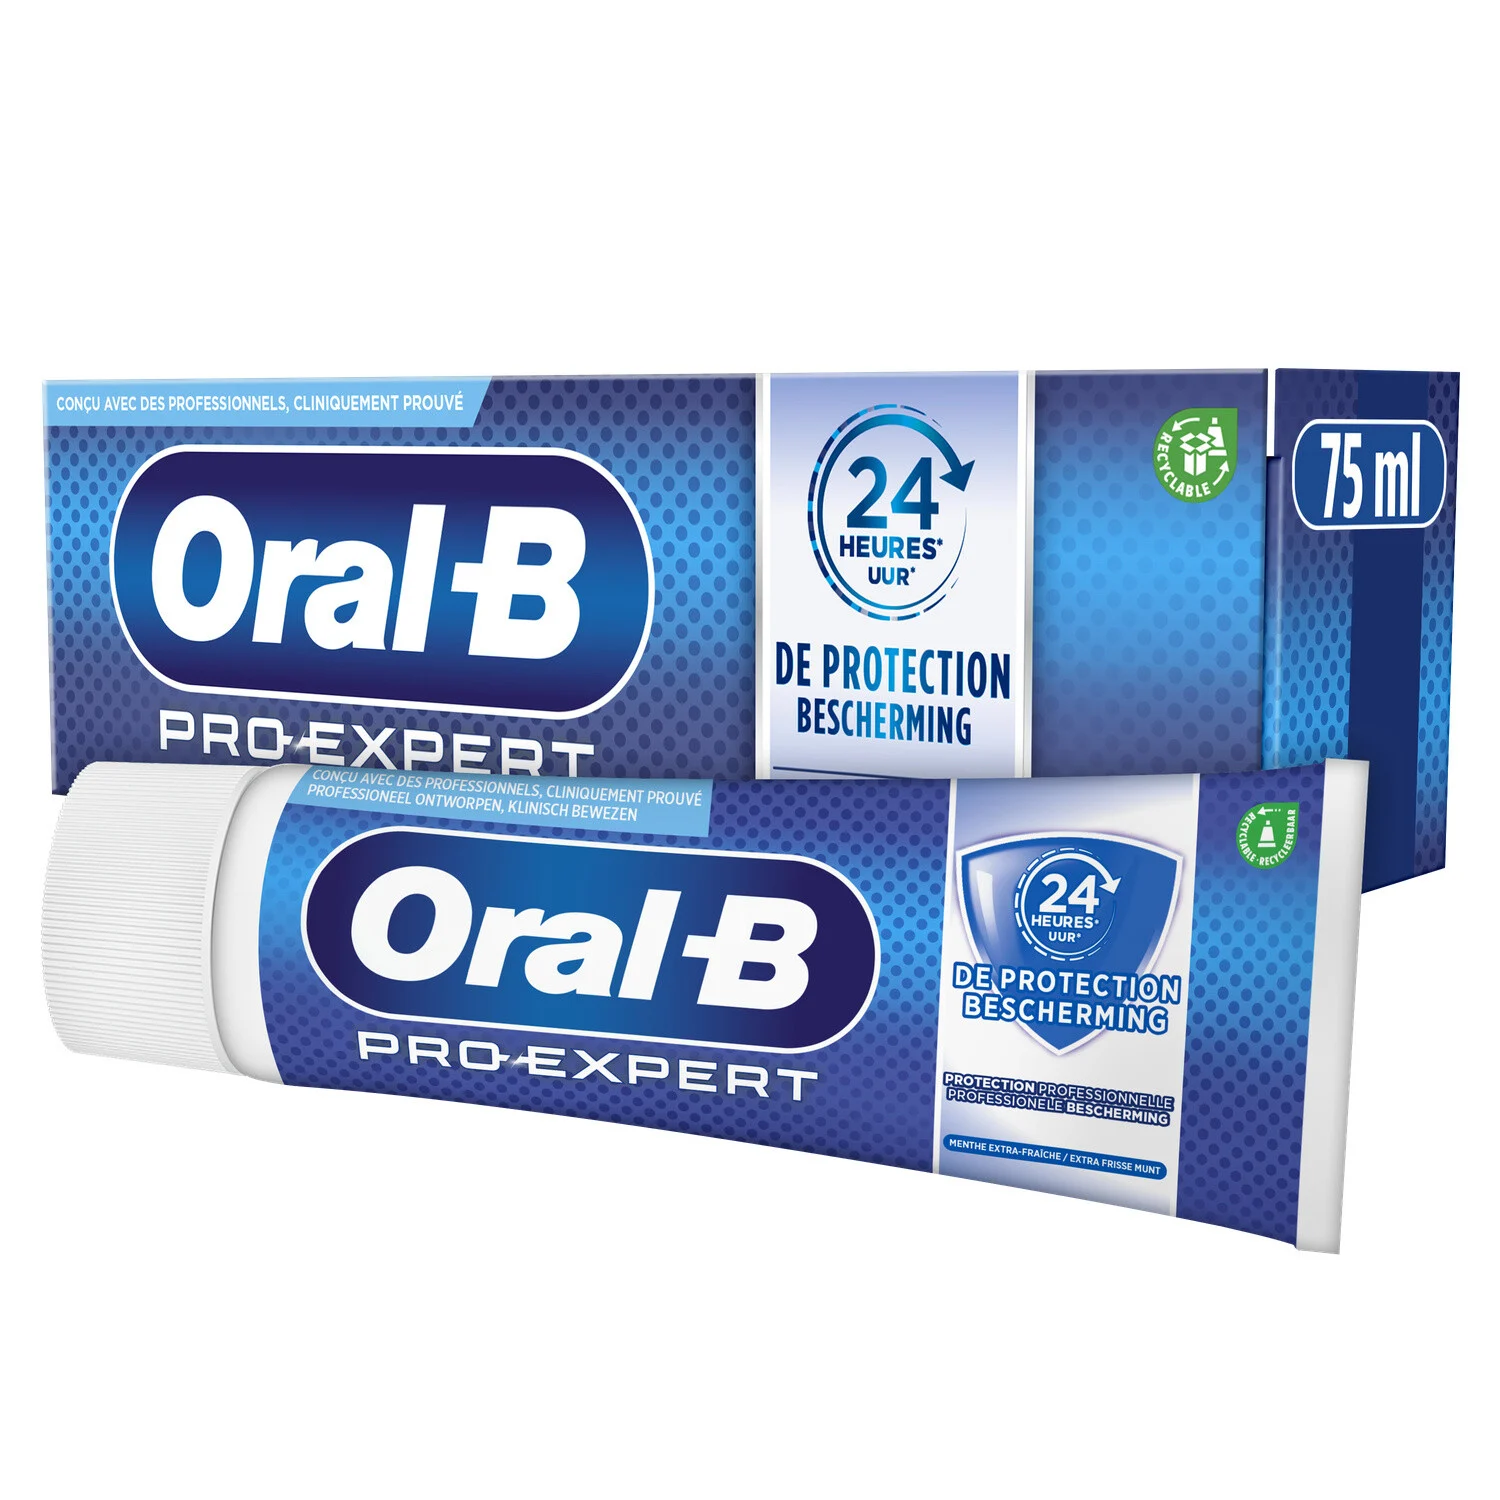 Menta protettiva per ammaccature Oral B da 75 ml